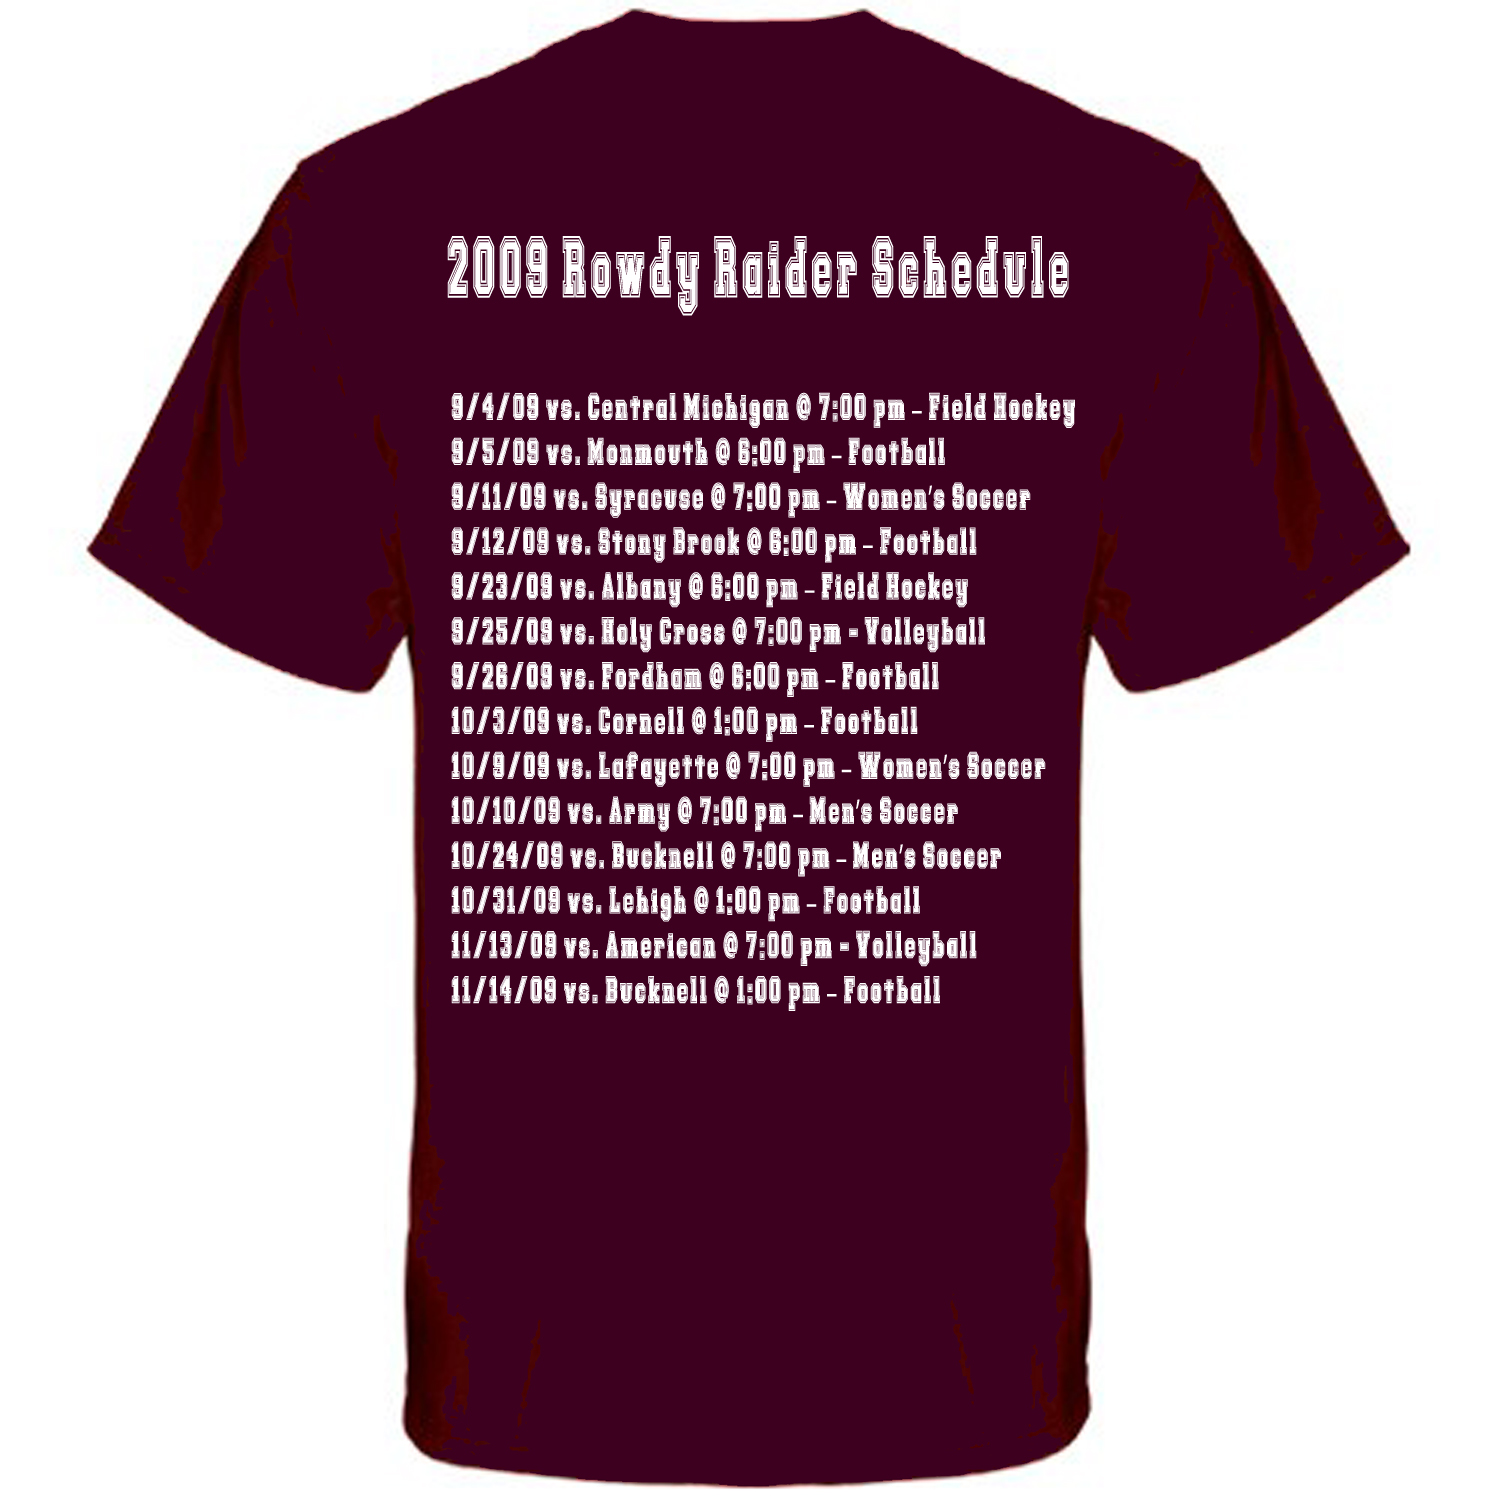 2009 Rowdy Raider Schedule